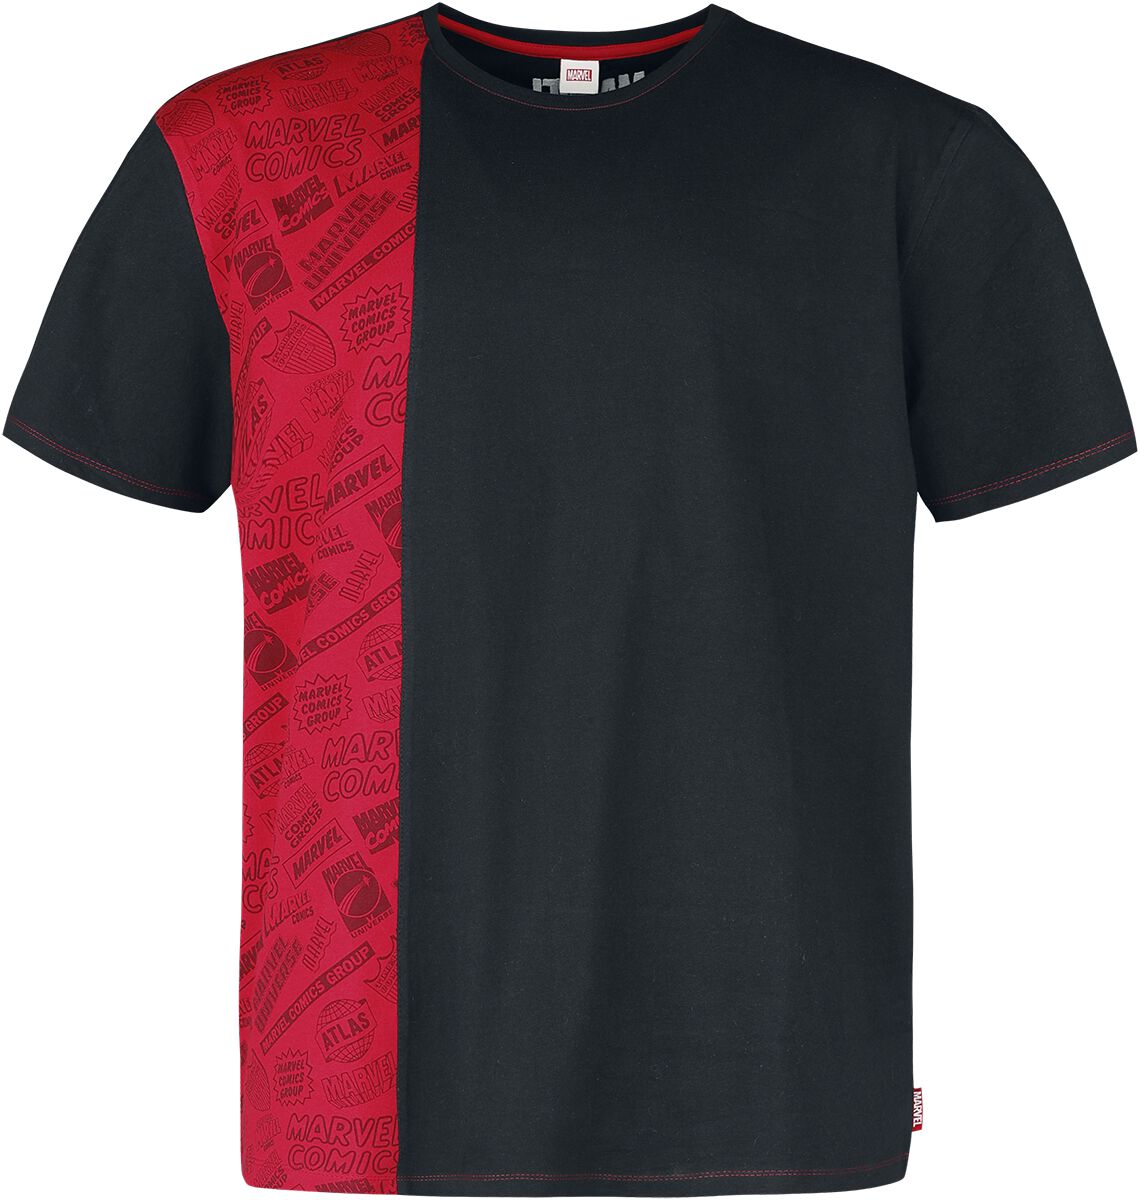 Marvel - Marvel T-Shirt - Heroes - S bis M - für Männer - Größe M - multicolor  - EMP exklusives Merchandise!